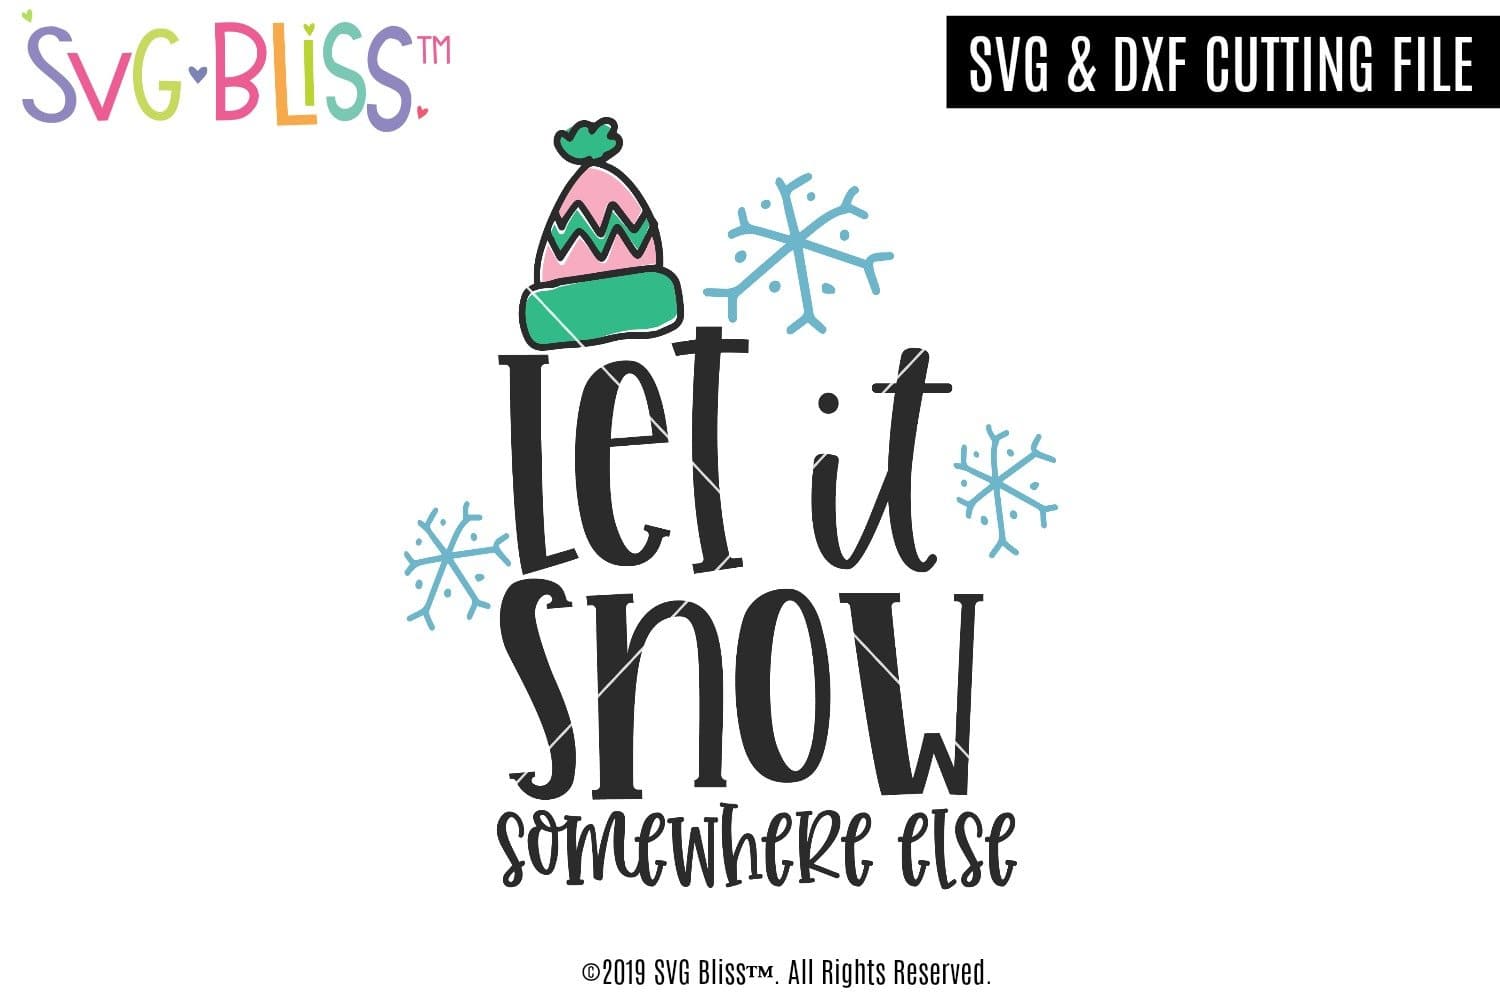 Free Free 116 Let It Snow Somewhere Else Svg SVG PNG EPS DXF File